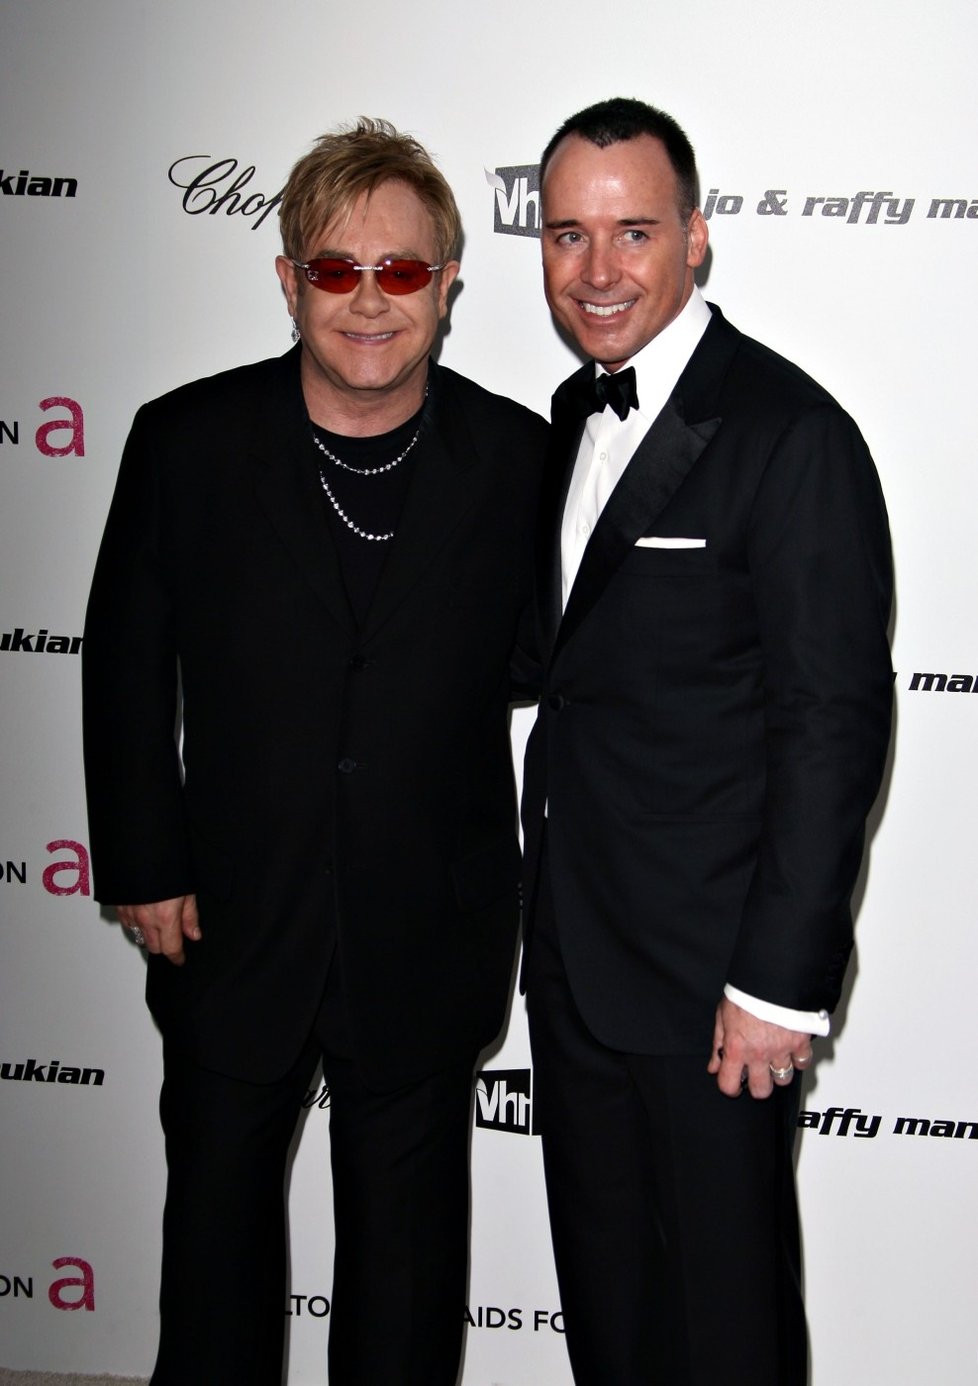 Elton John a partnerem Davidem vychovávají dvě děti.